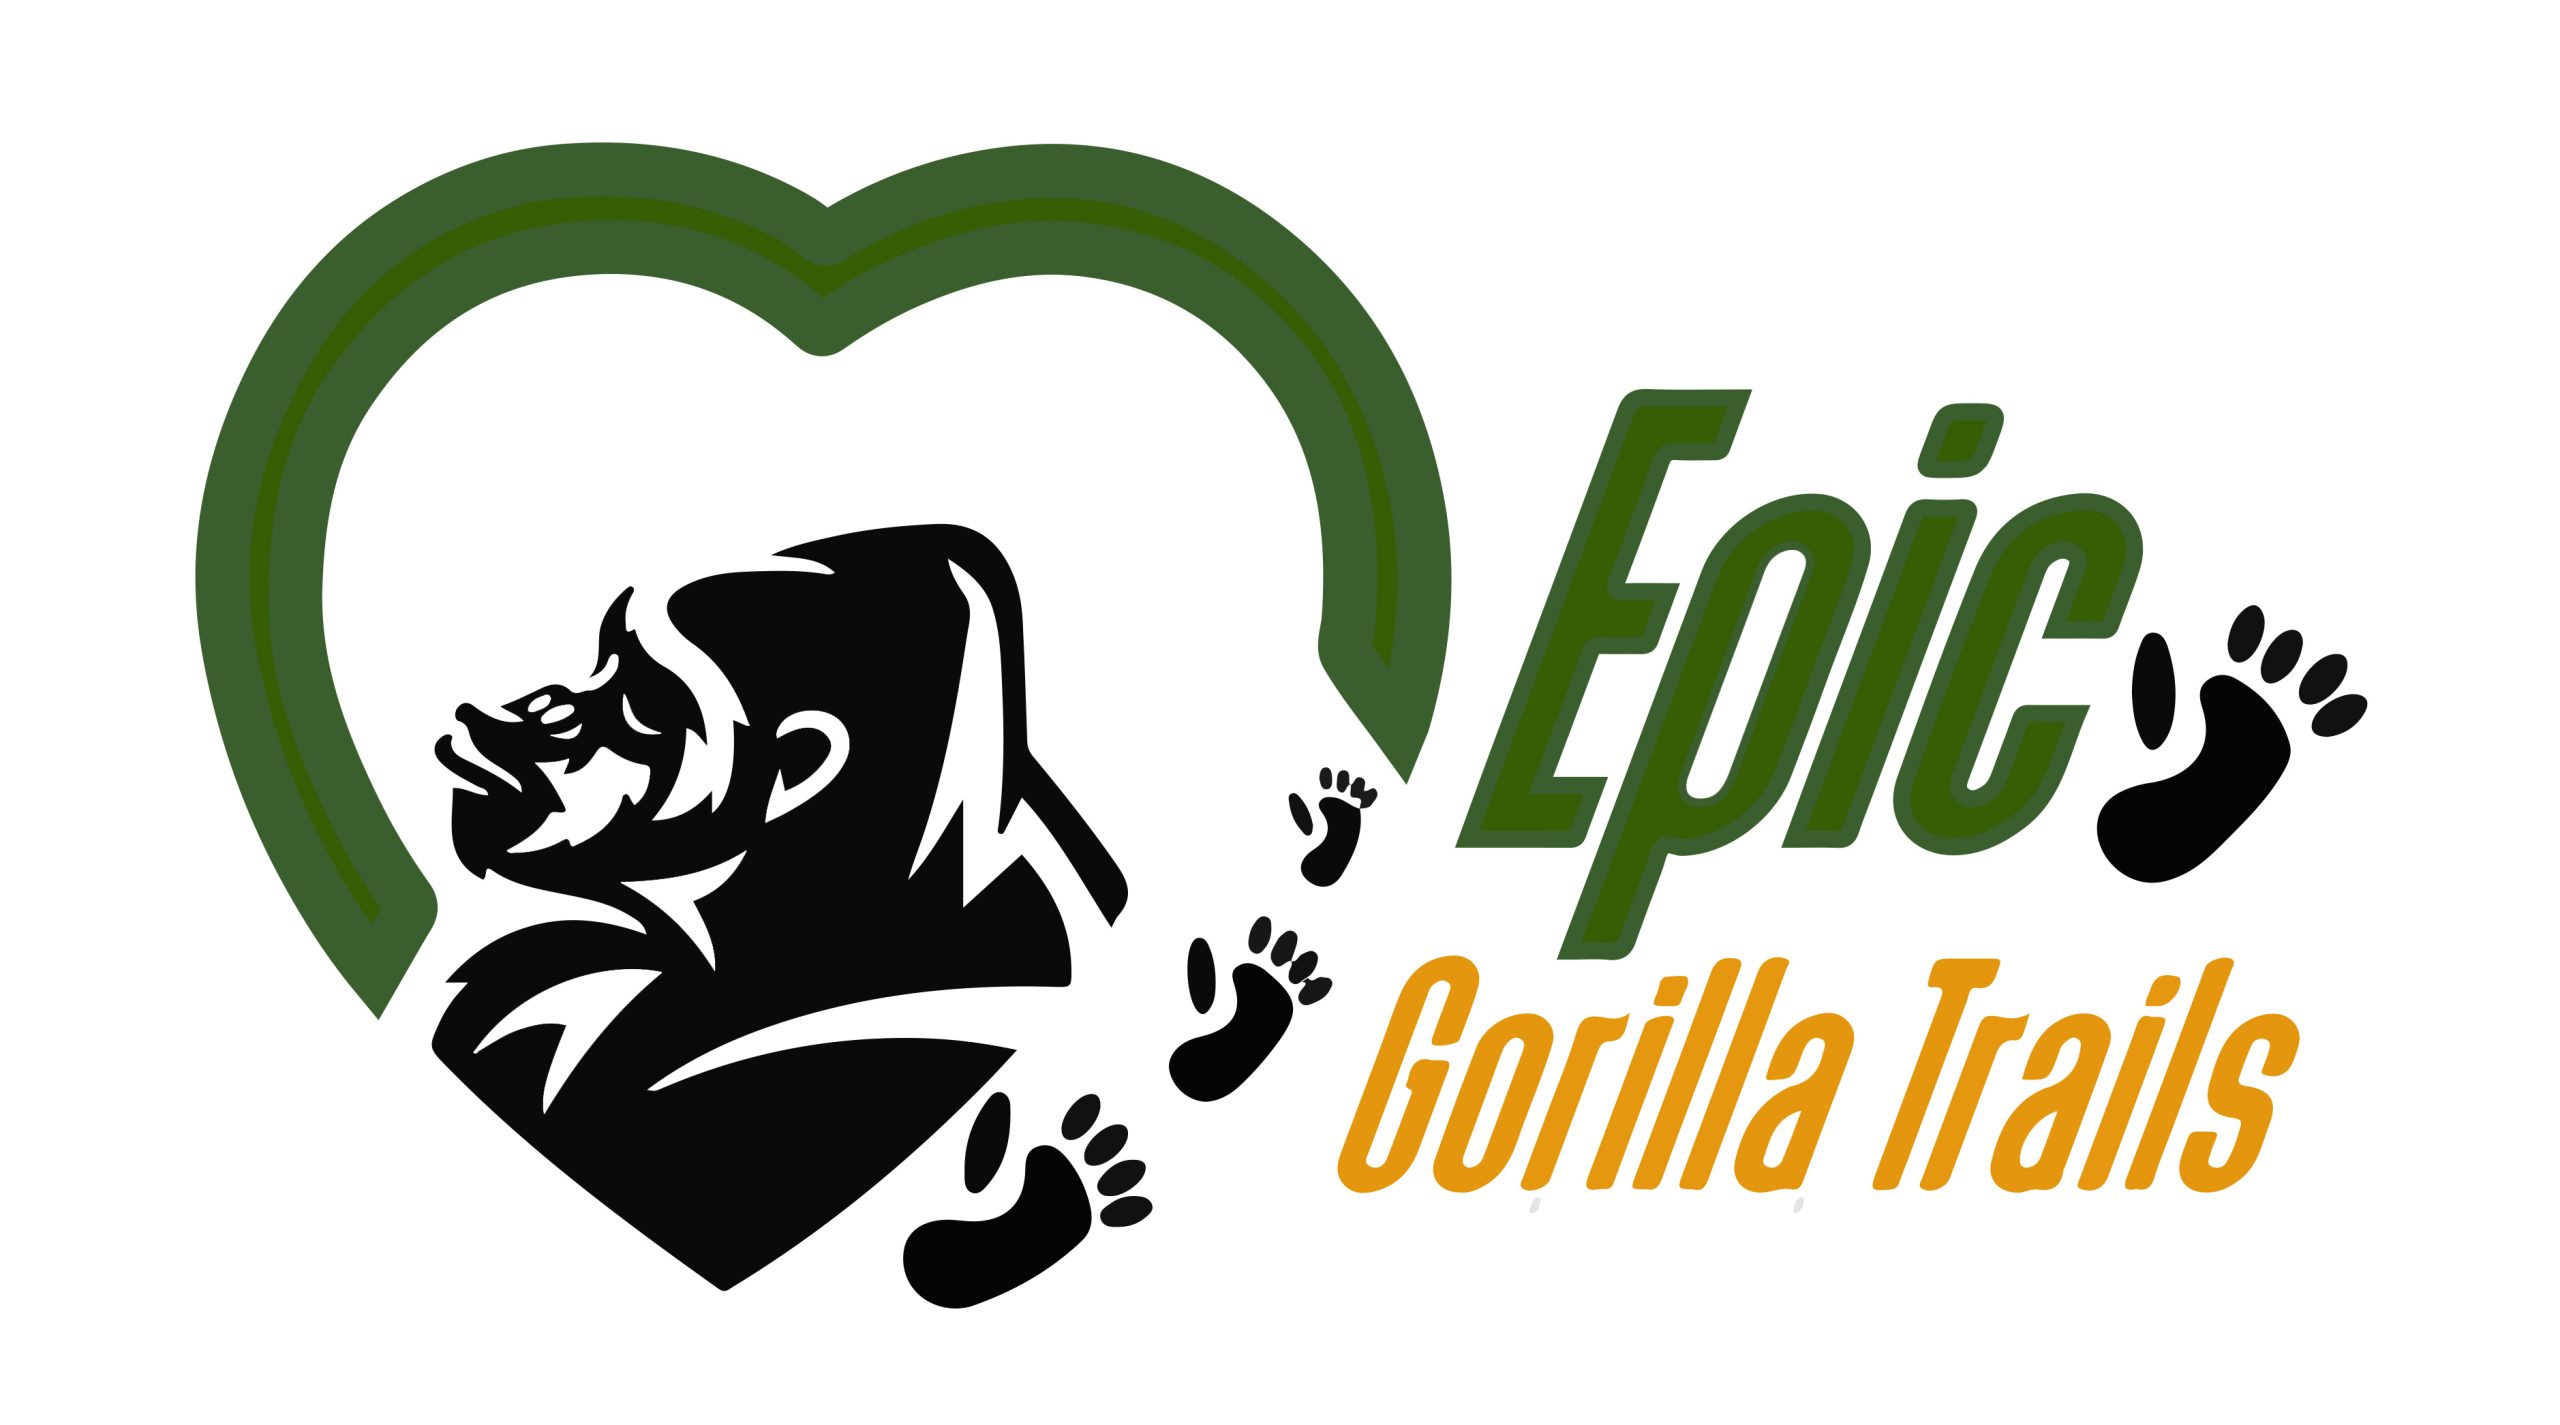 Epic Gorilla Trails